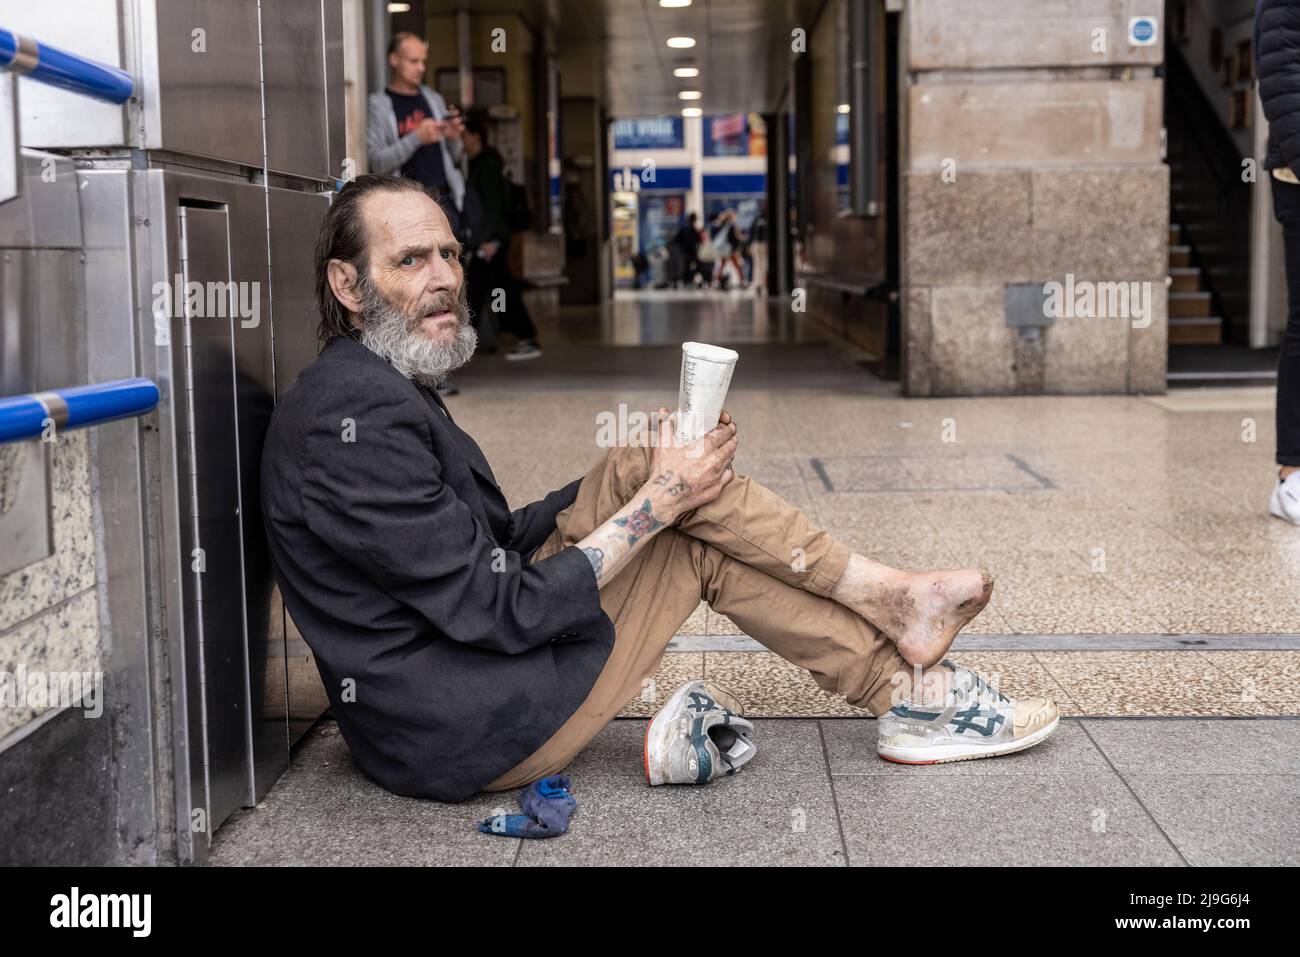 Vor der Victoria Station, London, Großbritannien, saß ein obdachloser Mann mit infiziertem Fuß und bettelte um Geld Stockfoto